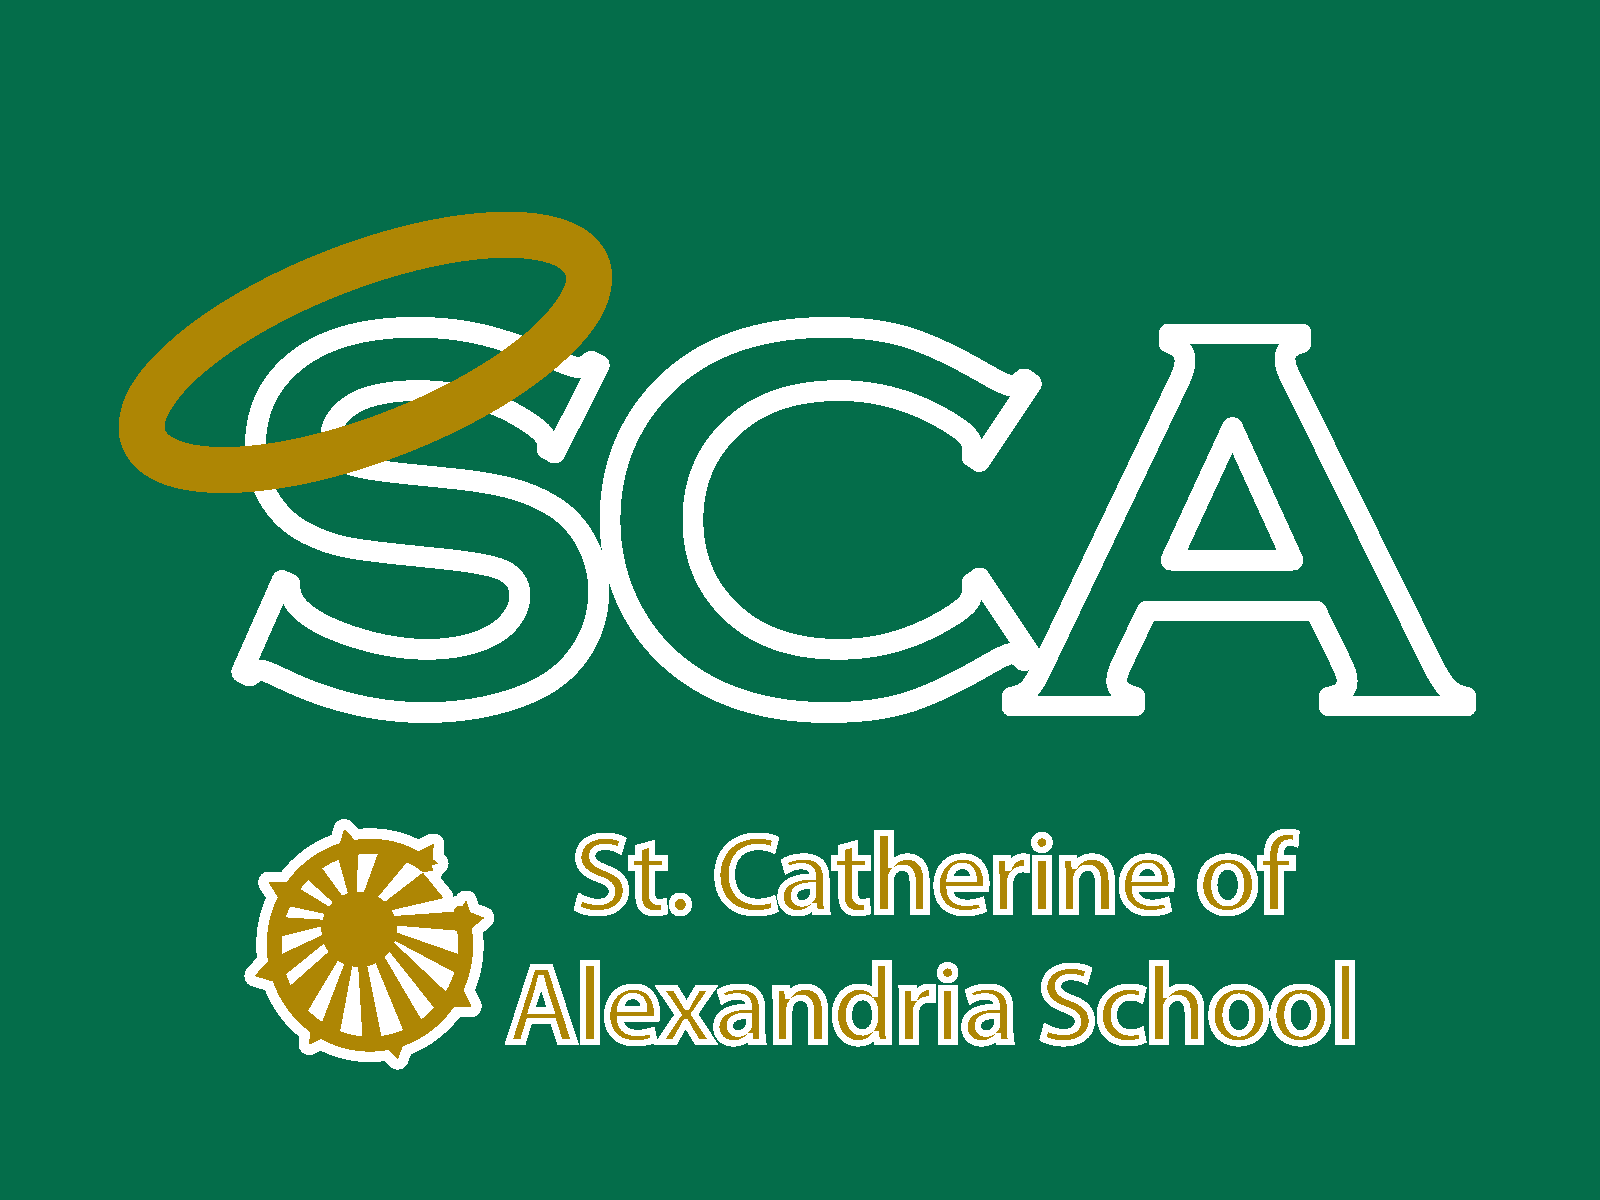 St. Catherine of Alexandria School